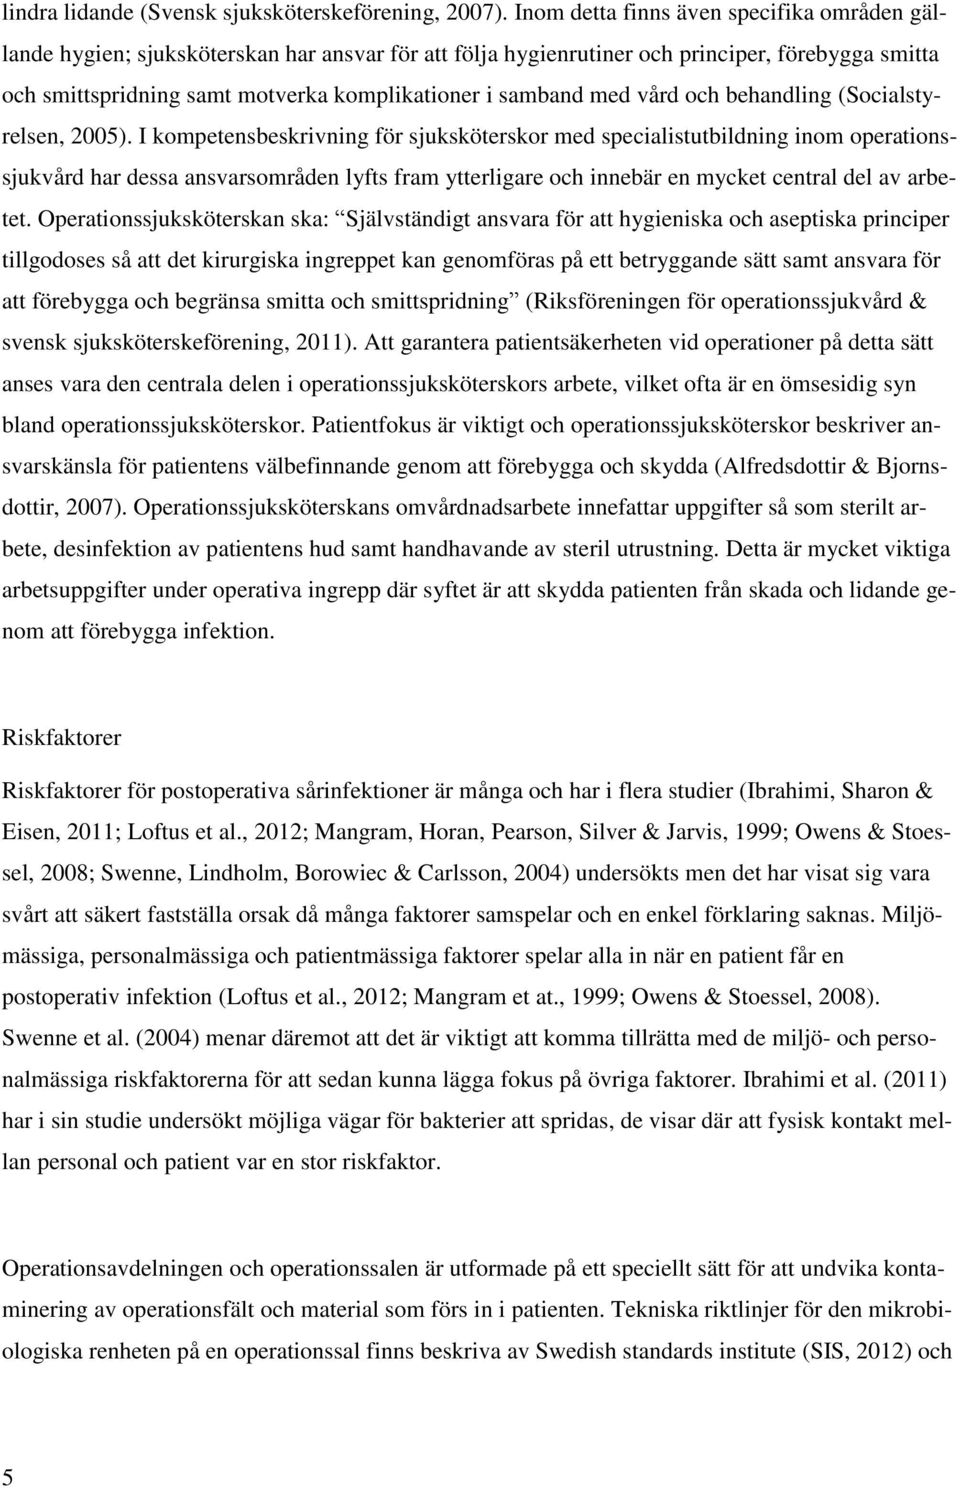 samband med vård och behandling (Socialstyrelsen, 2005).